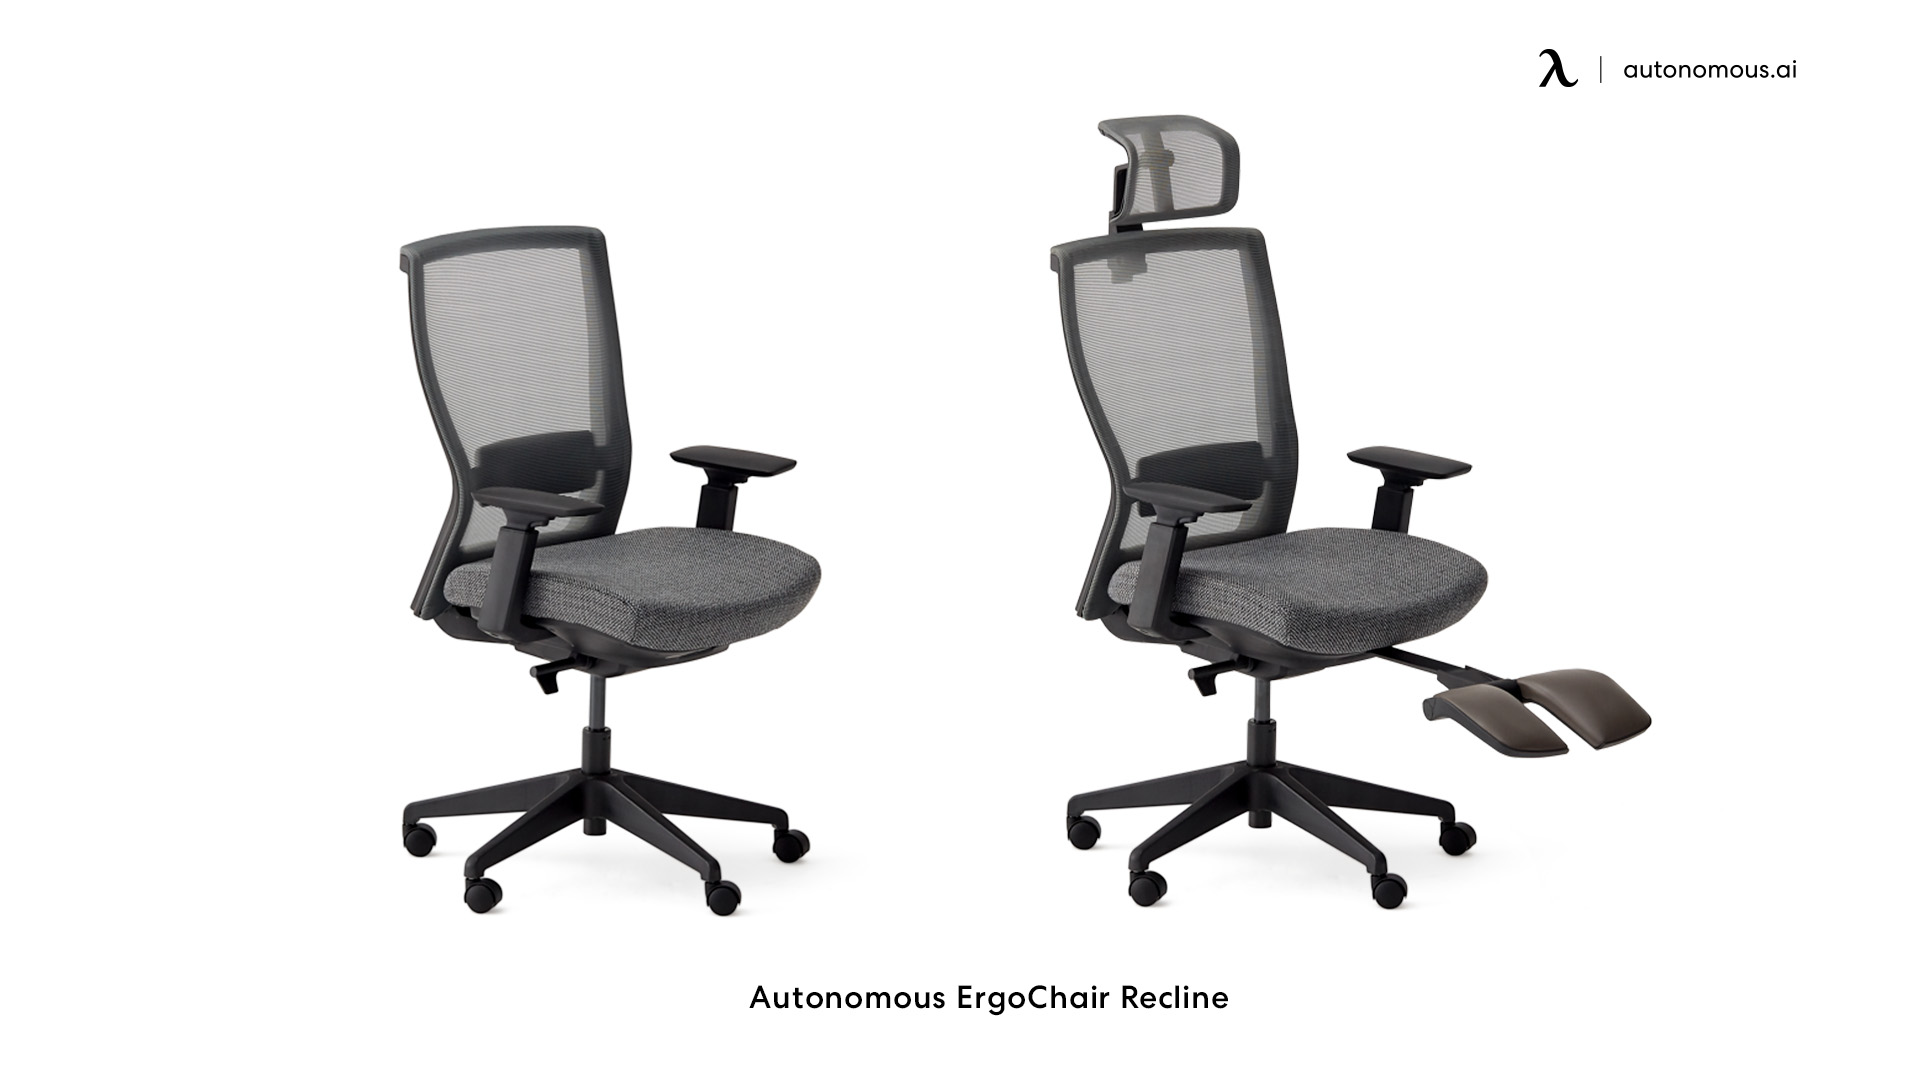 ErgoChair Recline comfortable desk chair